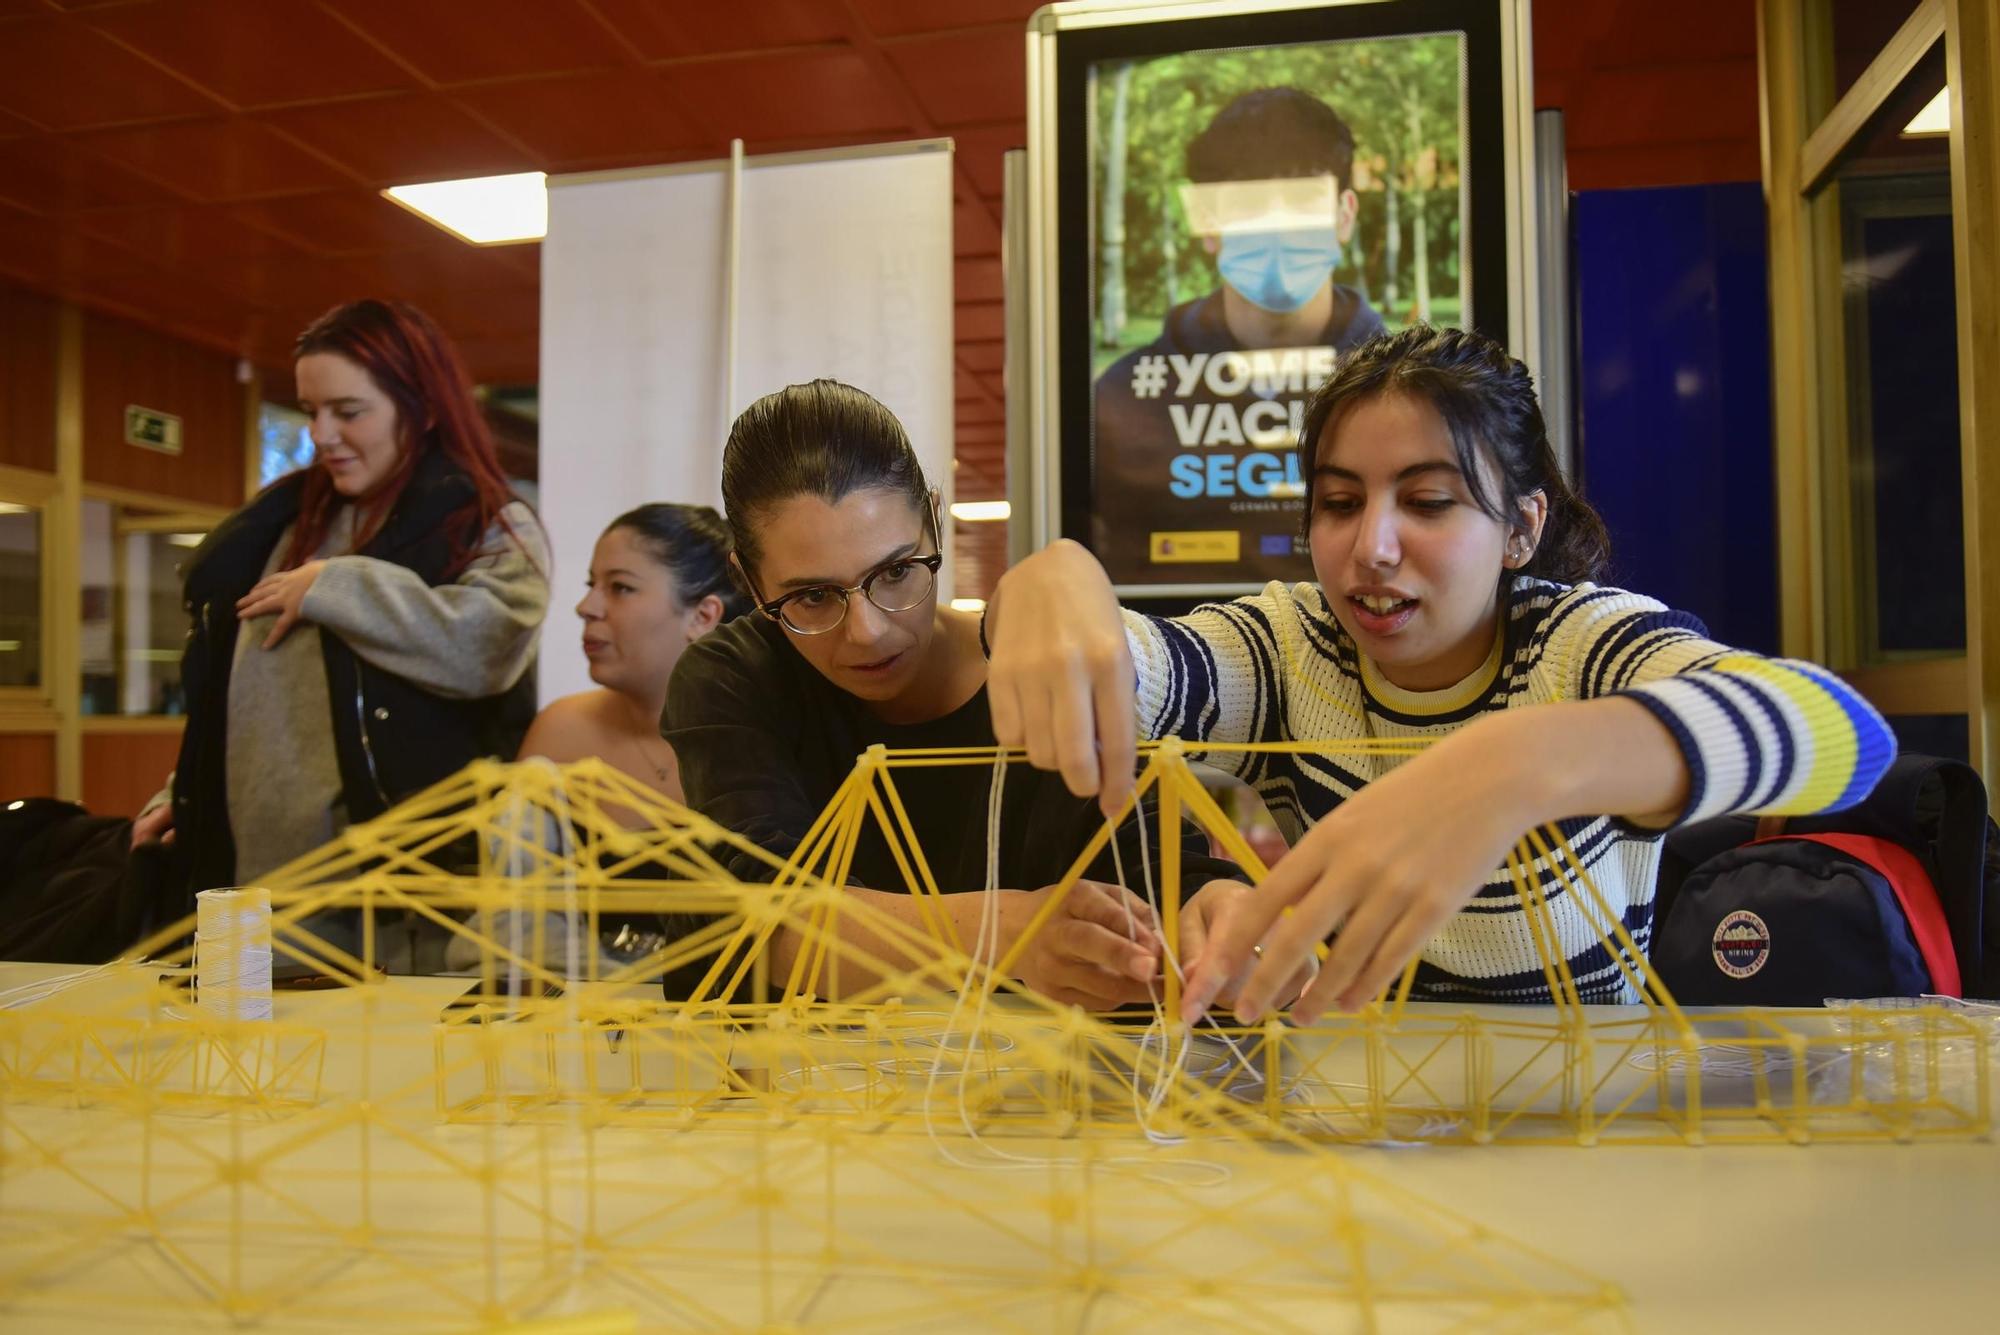 La Escuela de Arquitectura Técnica de A Coruña celebra 50 años con un concurso de vigas de espaguetis